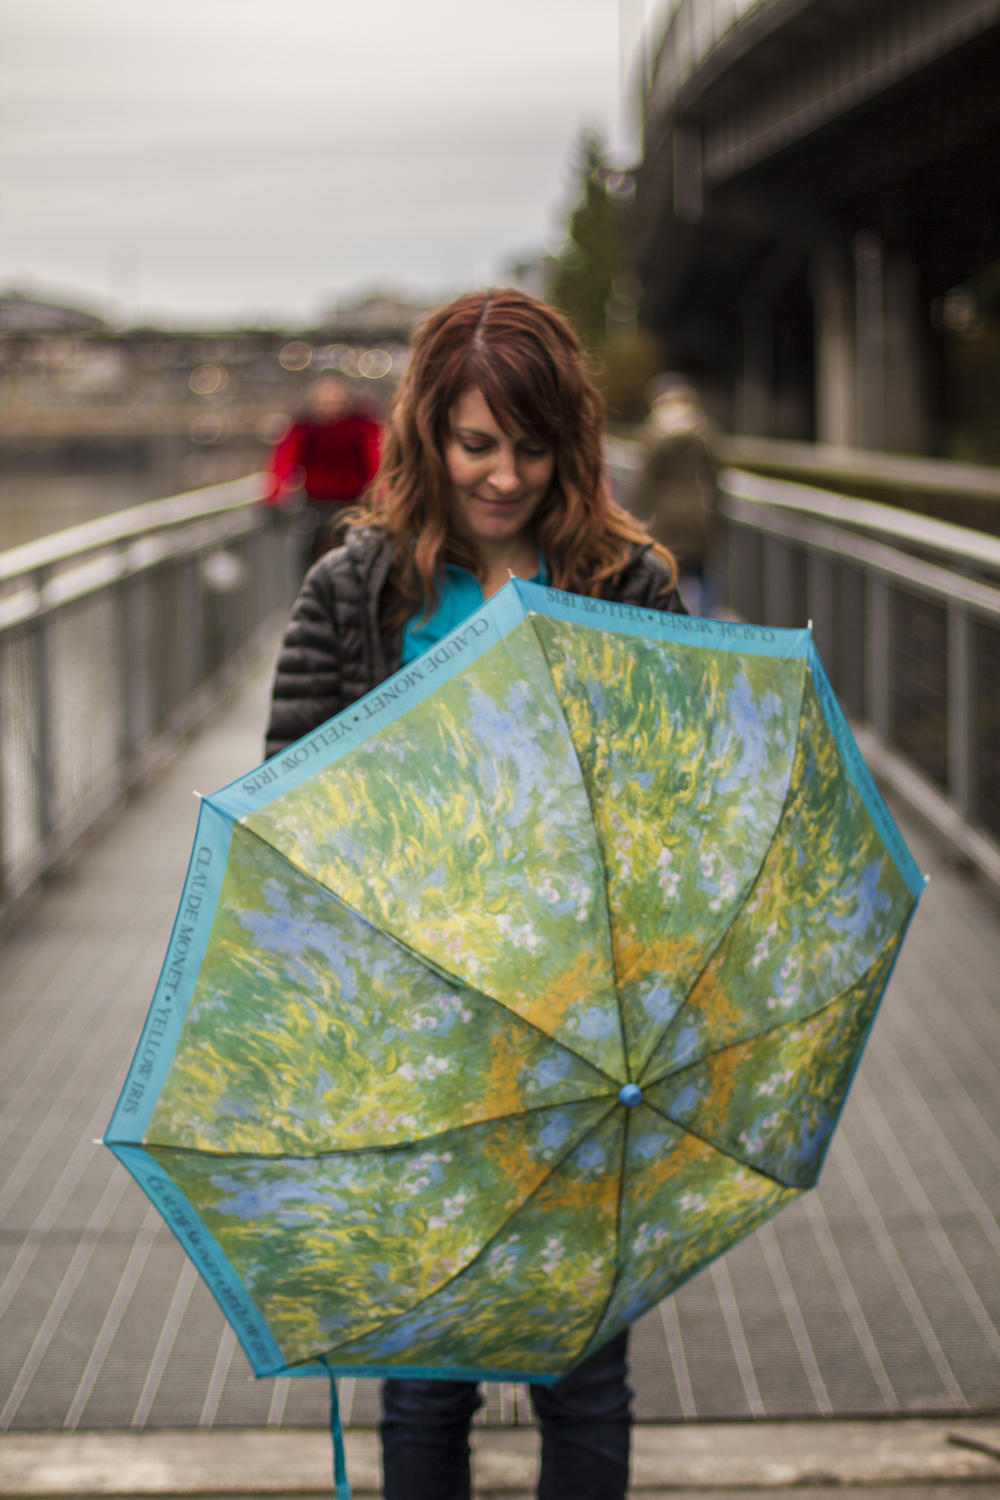 Alyssa on the bridge with a bright blue, green, yellow and orange open umbrella